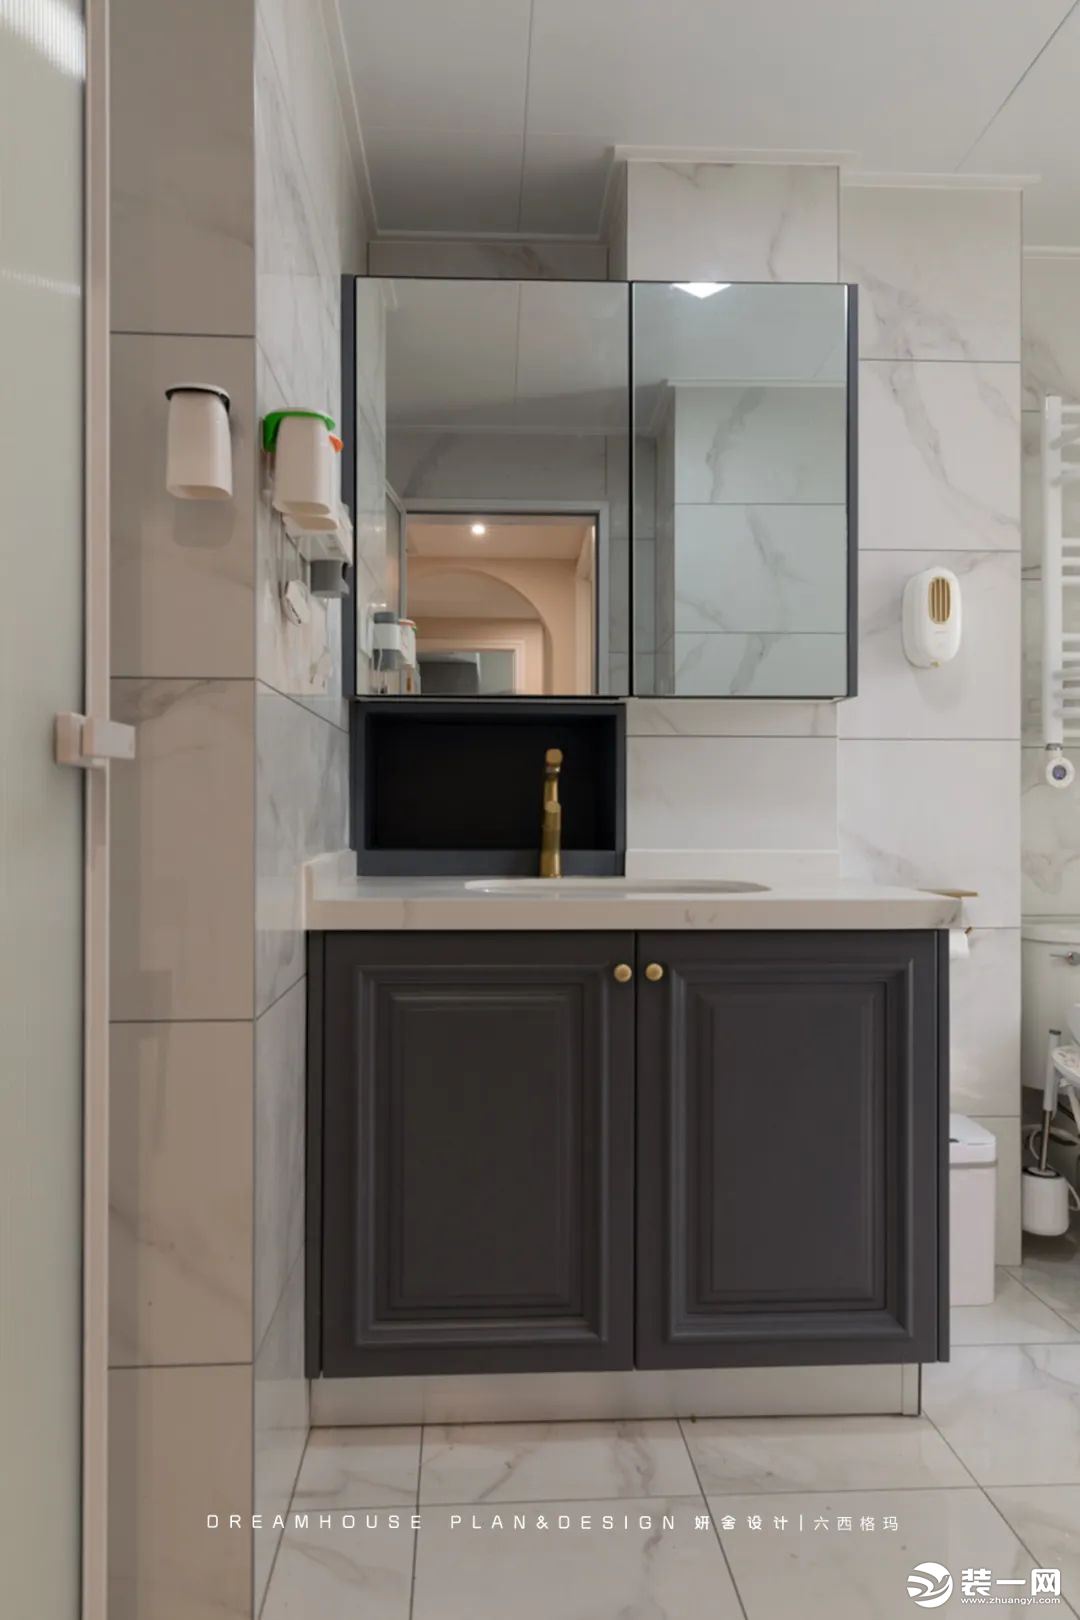 衛生間干濕分離，懸掛式浴室柜可以隔離地面濕氣，也避免了清潔死角。